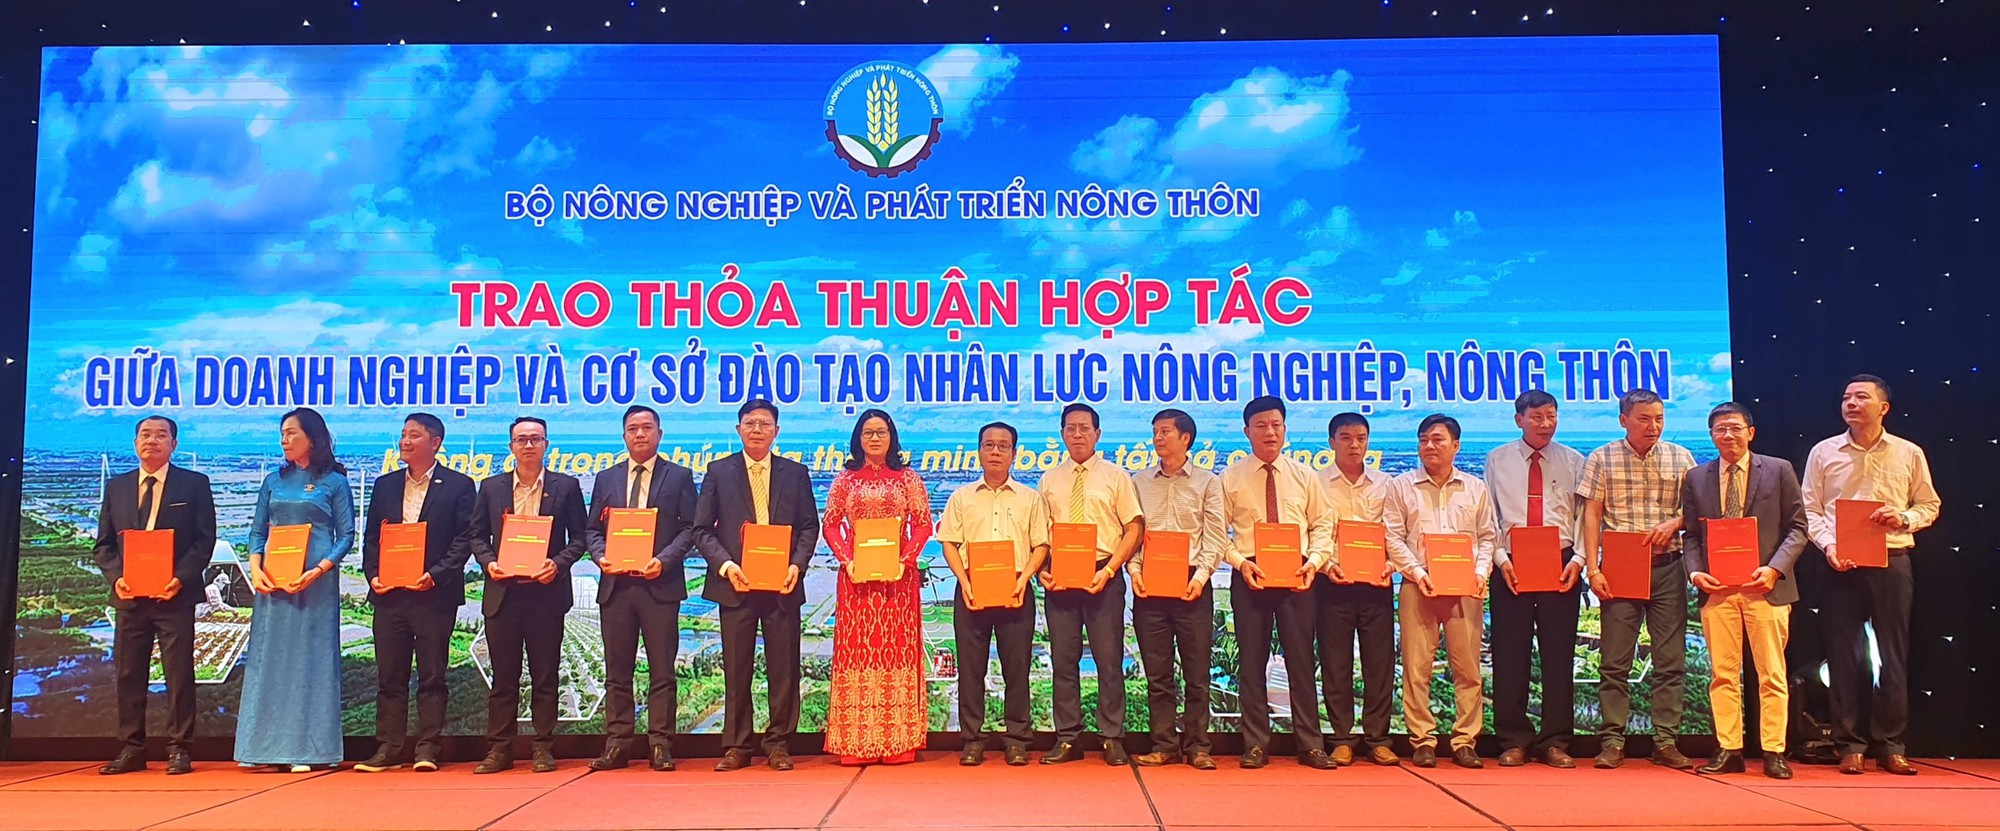 Học viện Nông nghiệp Việt Nam ký thỏa thuận với 3 doanh nghiệp về đào tạo nguồn nhân lực nông nghiệp - Ảnh 1.